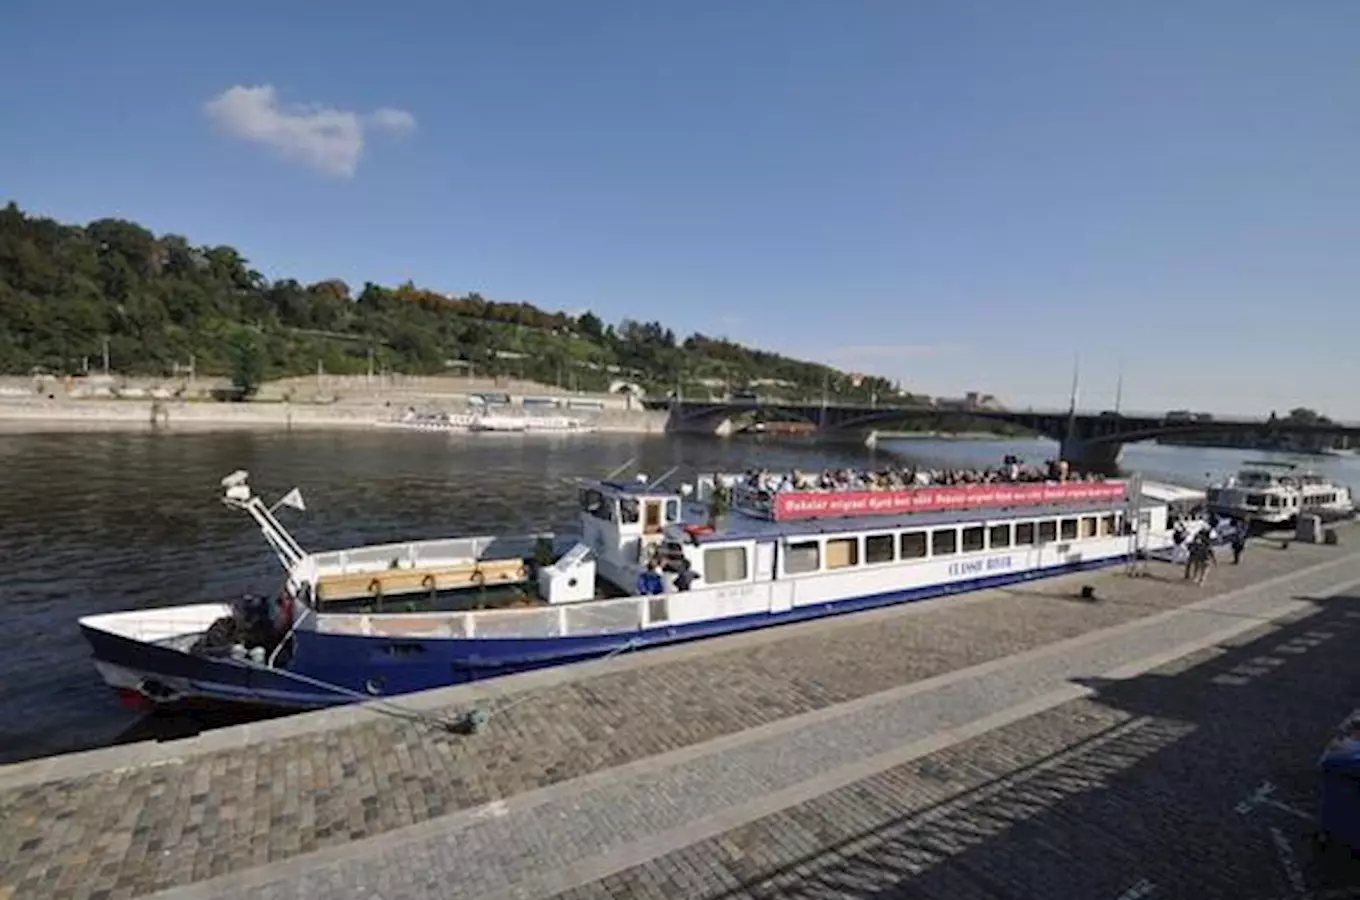 Vyhlídkové plavby v Praze s WiFi free